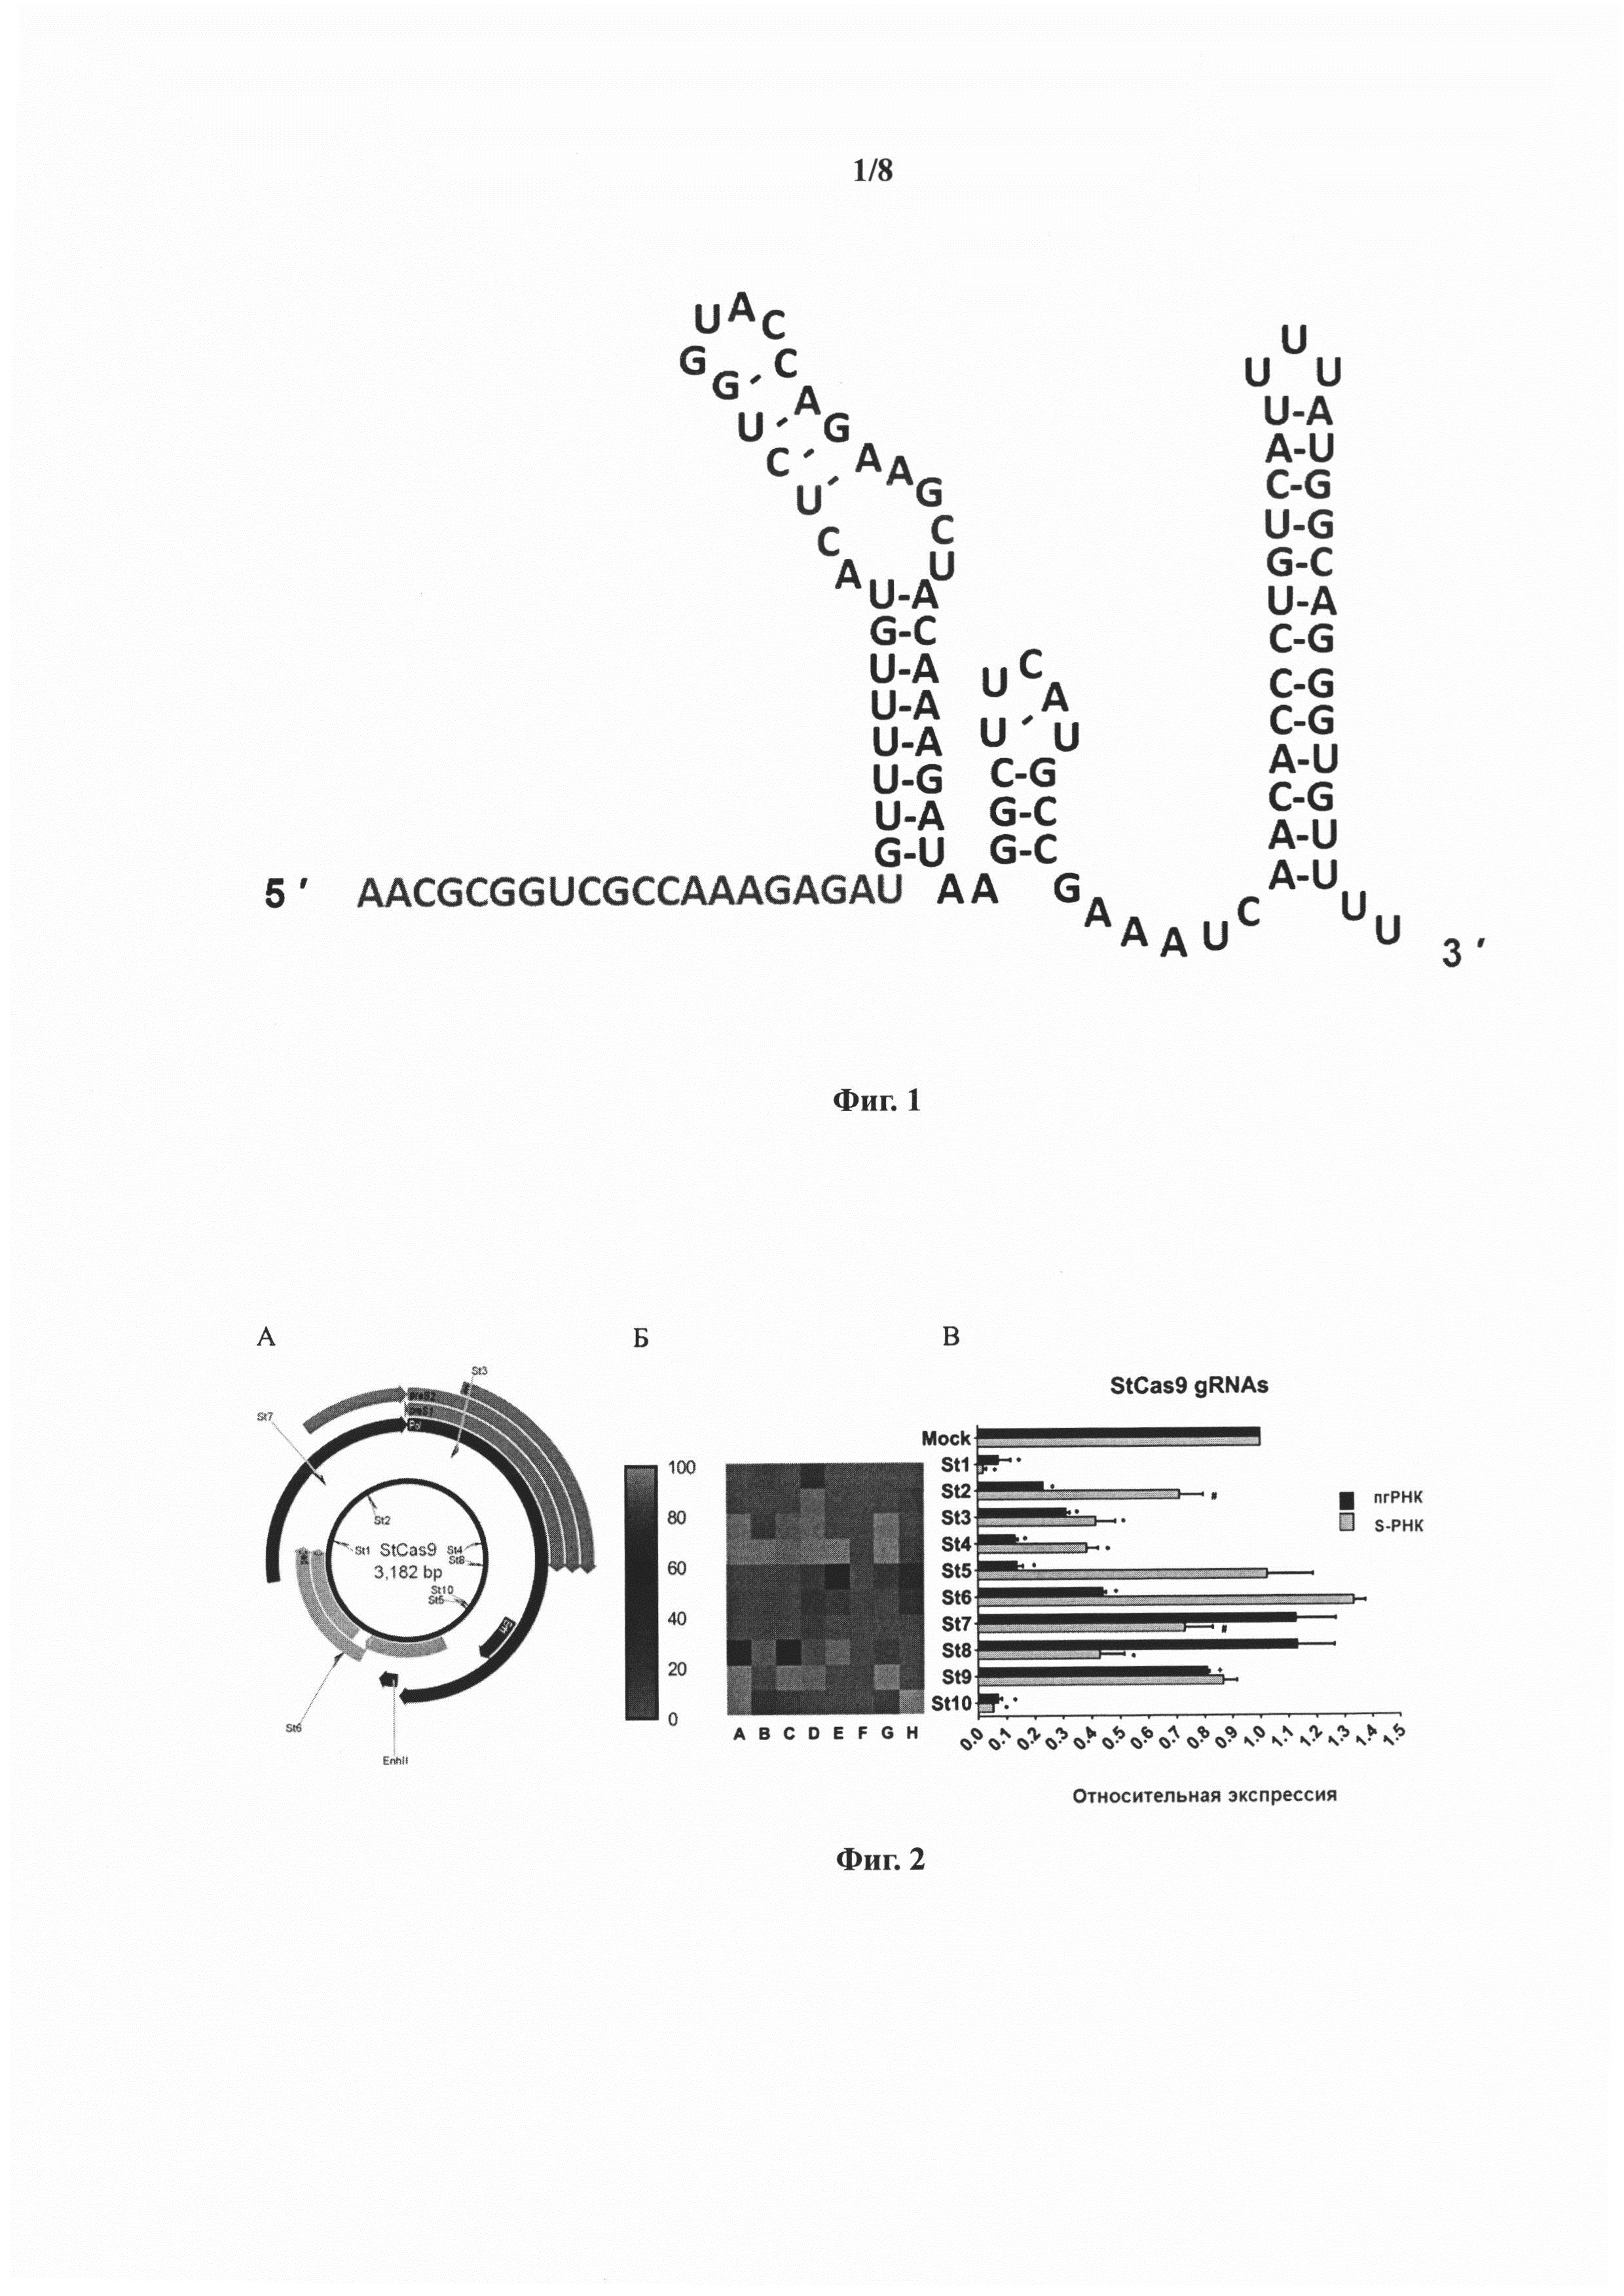 РНК-проводник St10 для использования в высокоспецифической системе нуклеаз Streptococcus thermophilus CRISPR/Cas9 (StCas9) и применение указанного РНК-проводника и белка StCas9 для подавления экспрессии вируса гепатита B в клетке-хозяине и для элиминации вирусной ДНК из клетки-хозяина